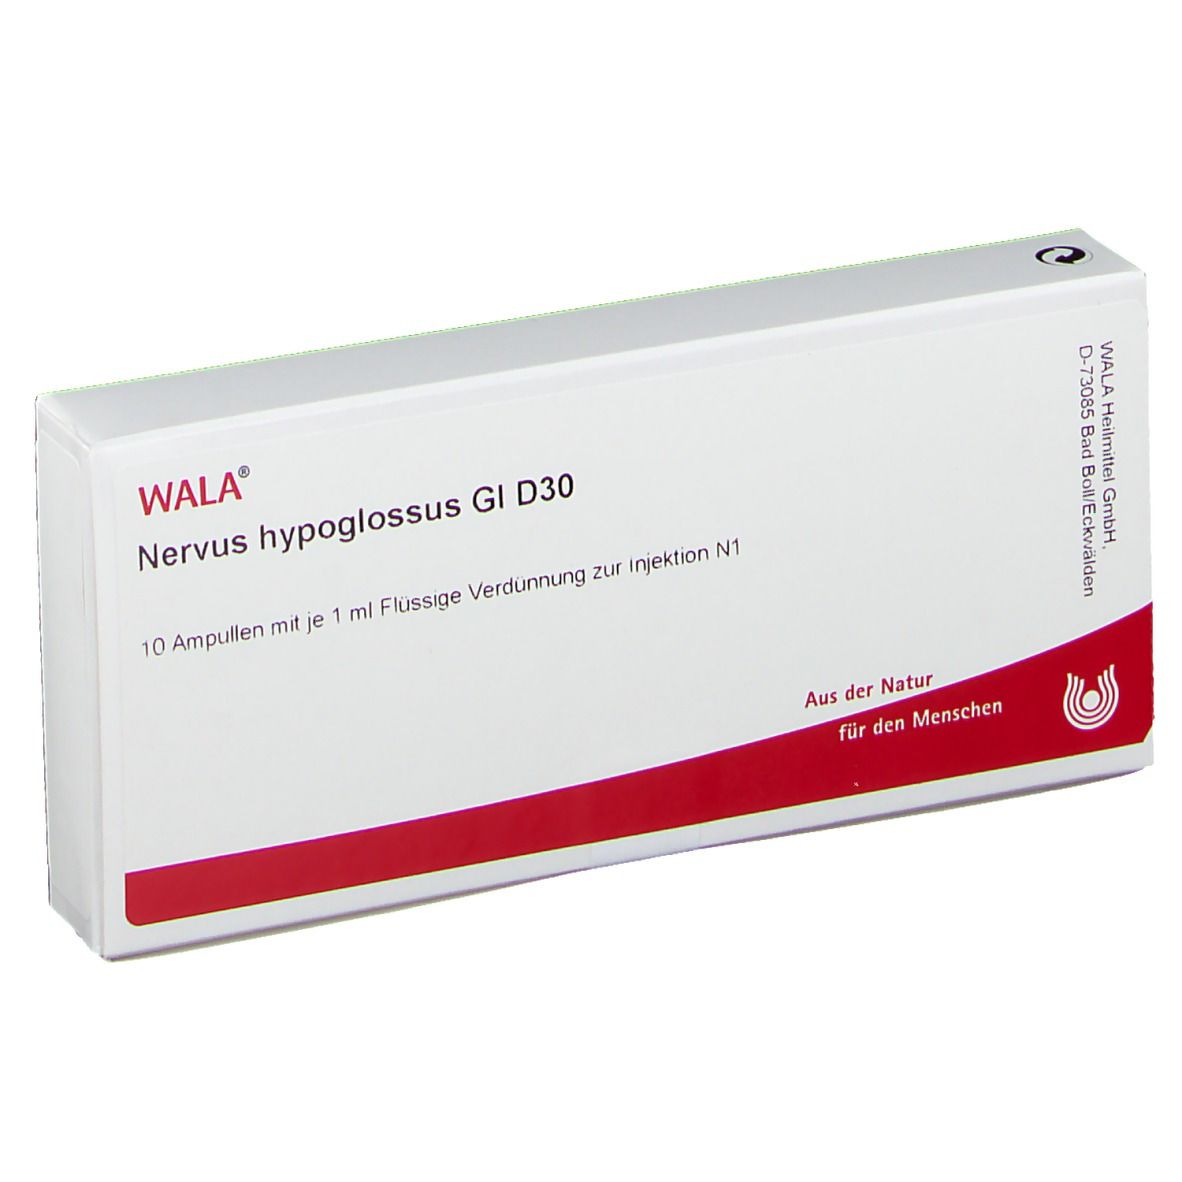 WALA® Nervus hypoglossus Gl D 30